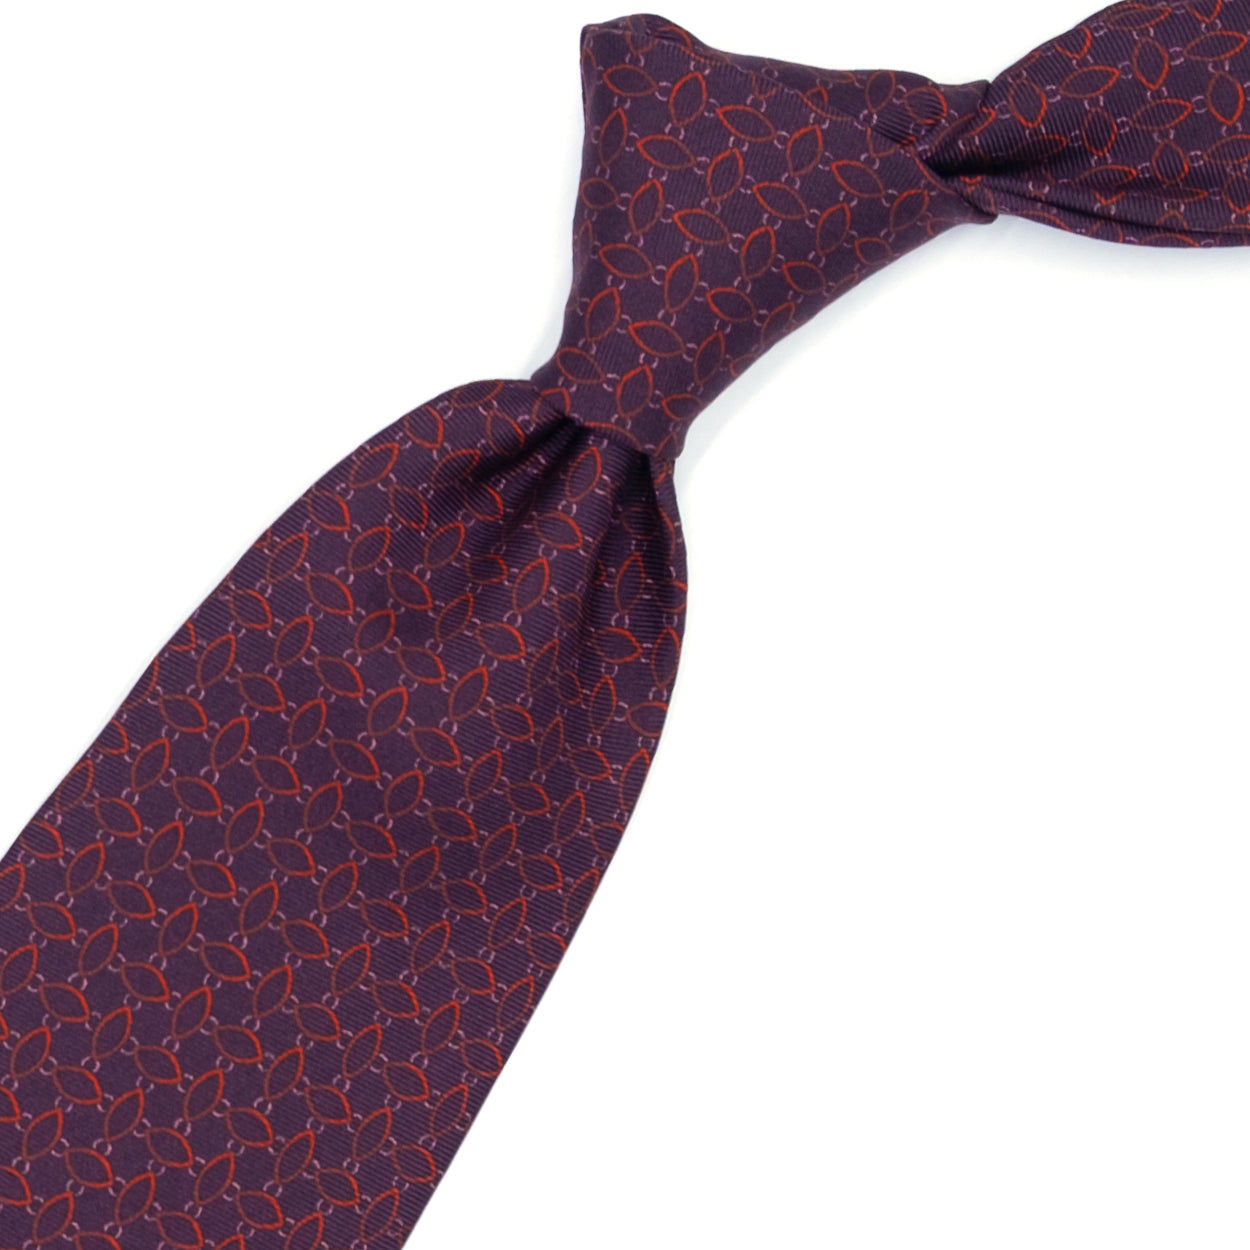 Cravatta bordeaux con pattern astratto rosso